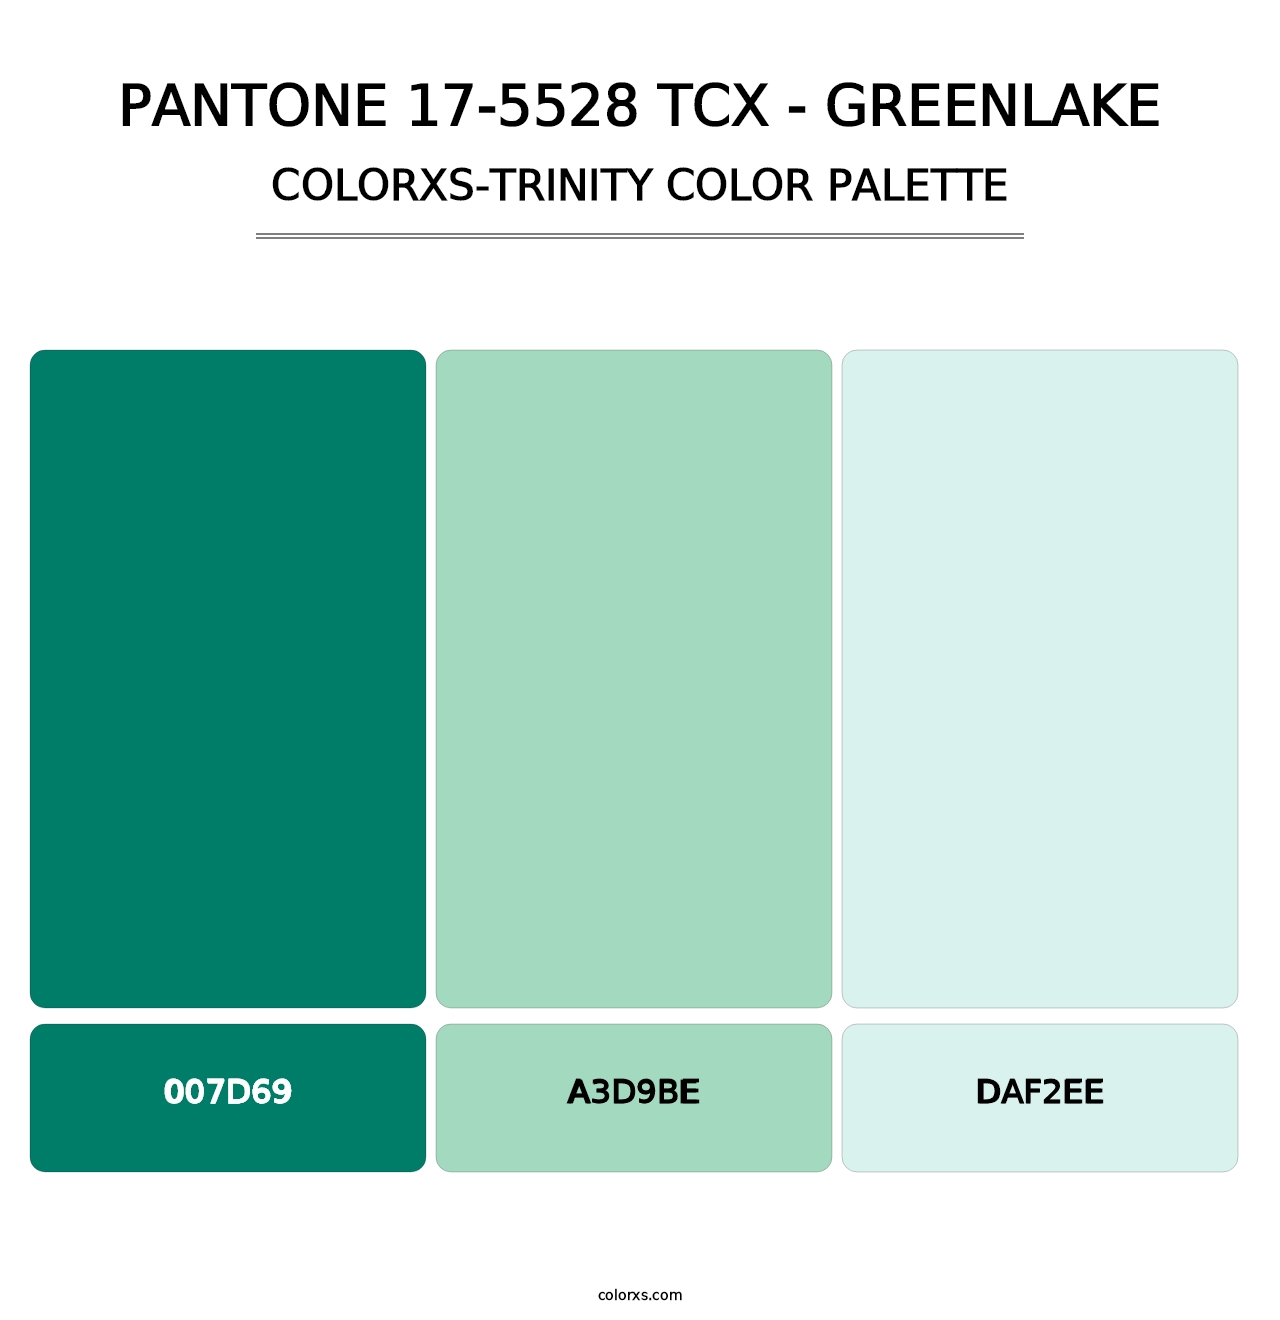 PANTONE 17-5528 TCX - Greenlake - Colorxs Trinity Palette